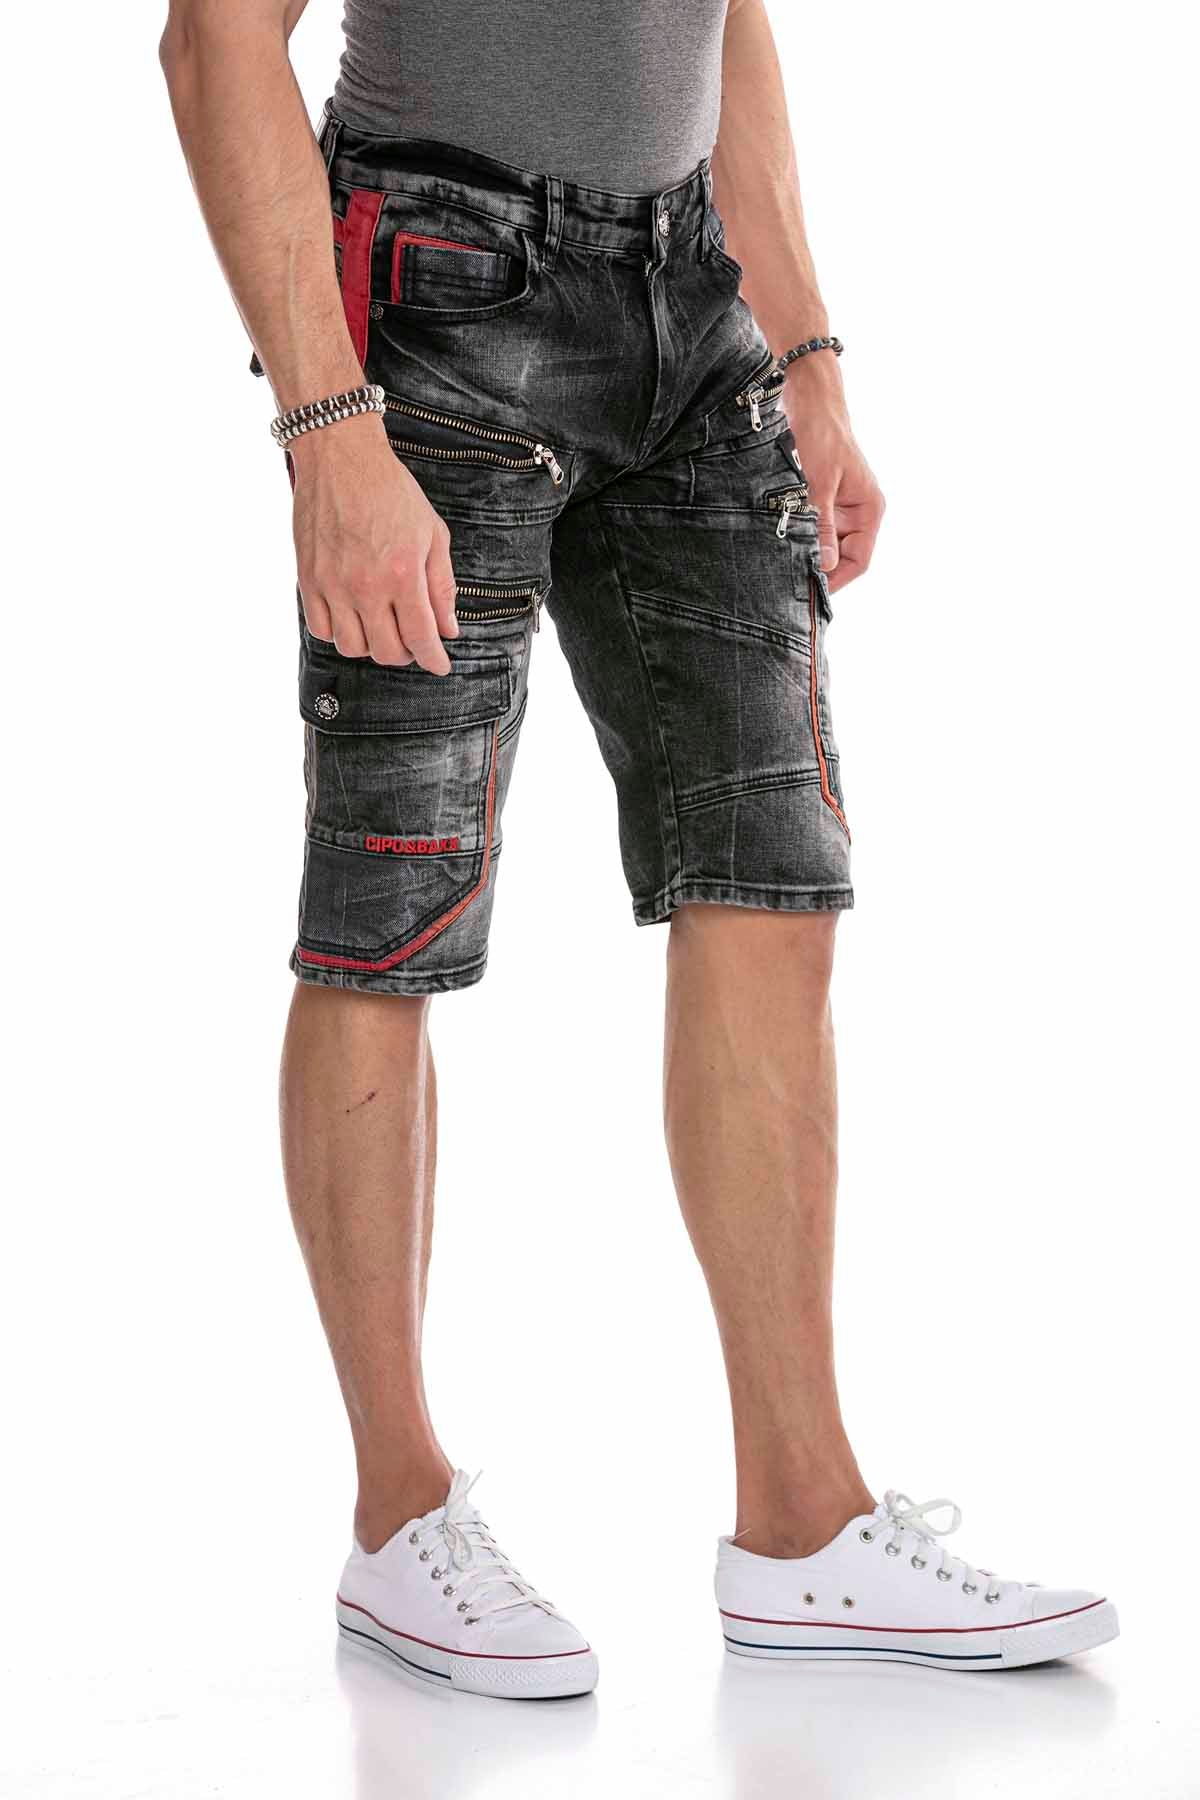 Cipo &amp; Baxx ROSBURG men's short jeans denim CK224